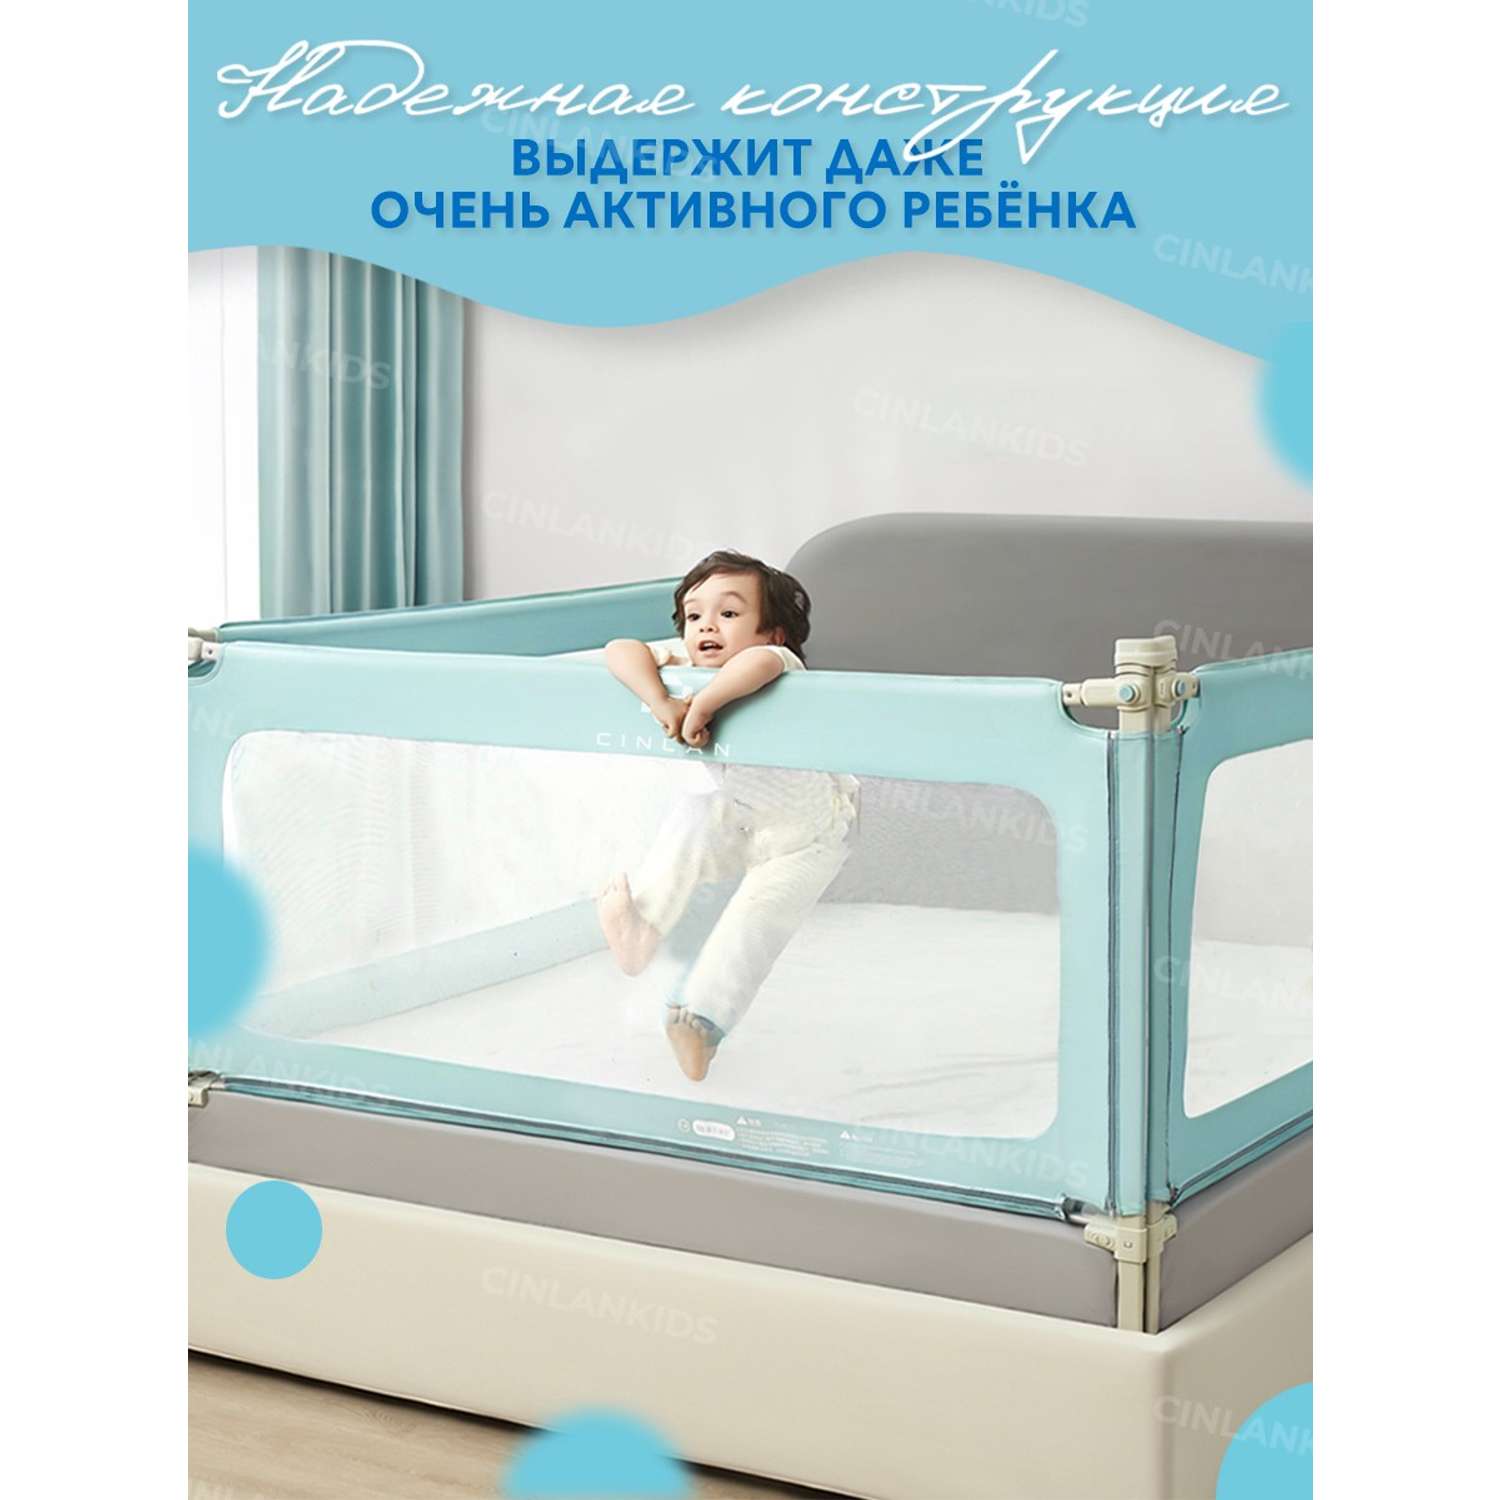 Защитный барьер детский CINLANKIDS для кровати 200 см 1 шт - фото 3